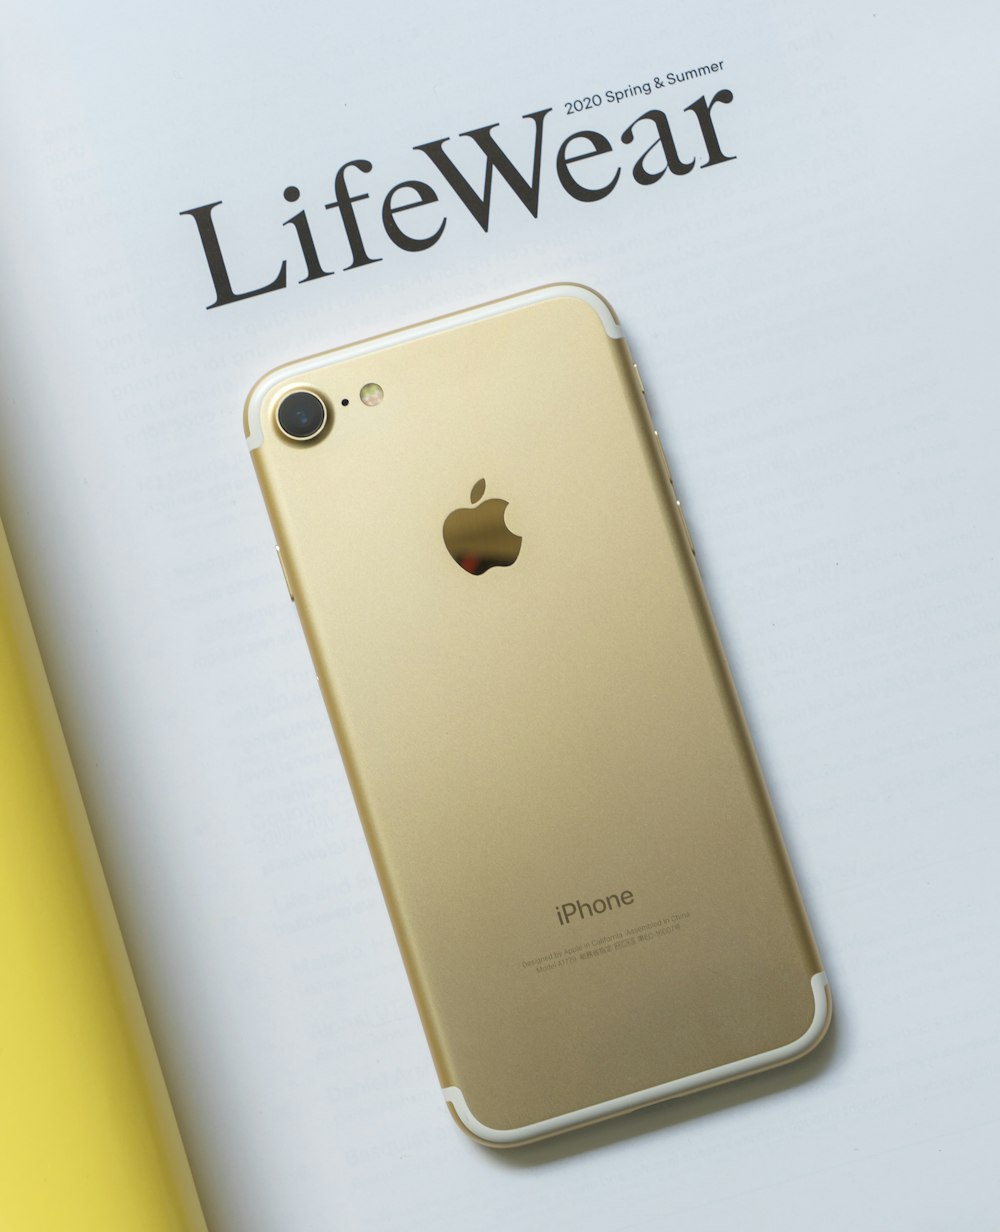 iPhone 6 doré sur surface blanche